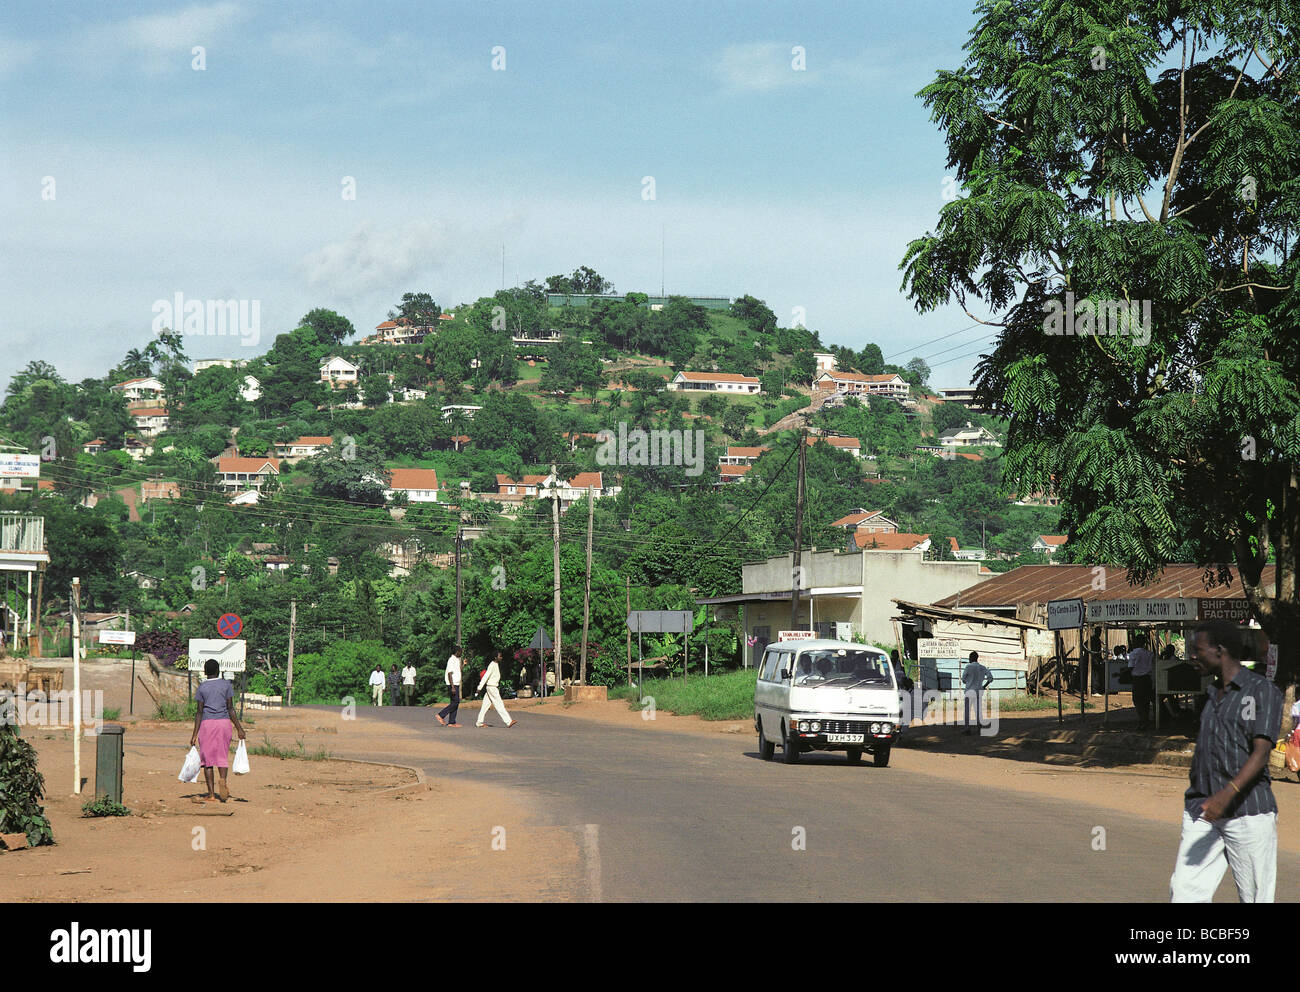 Tank Hill Kampala-Uganda-Ost-Afrika der Hügel heißt so, weil das Reservoir auf einem Hügel in diesem Bild zu sehen Stockfoto